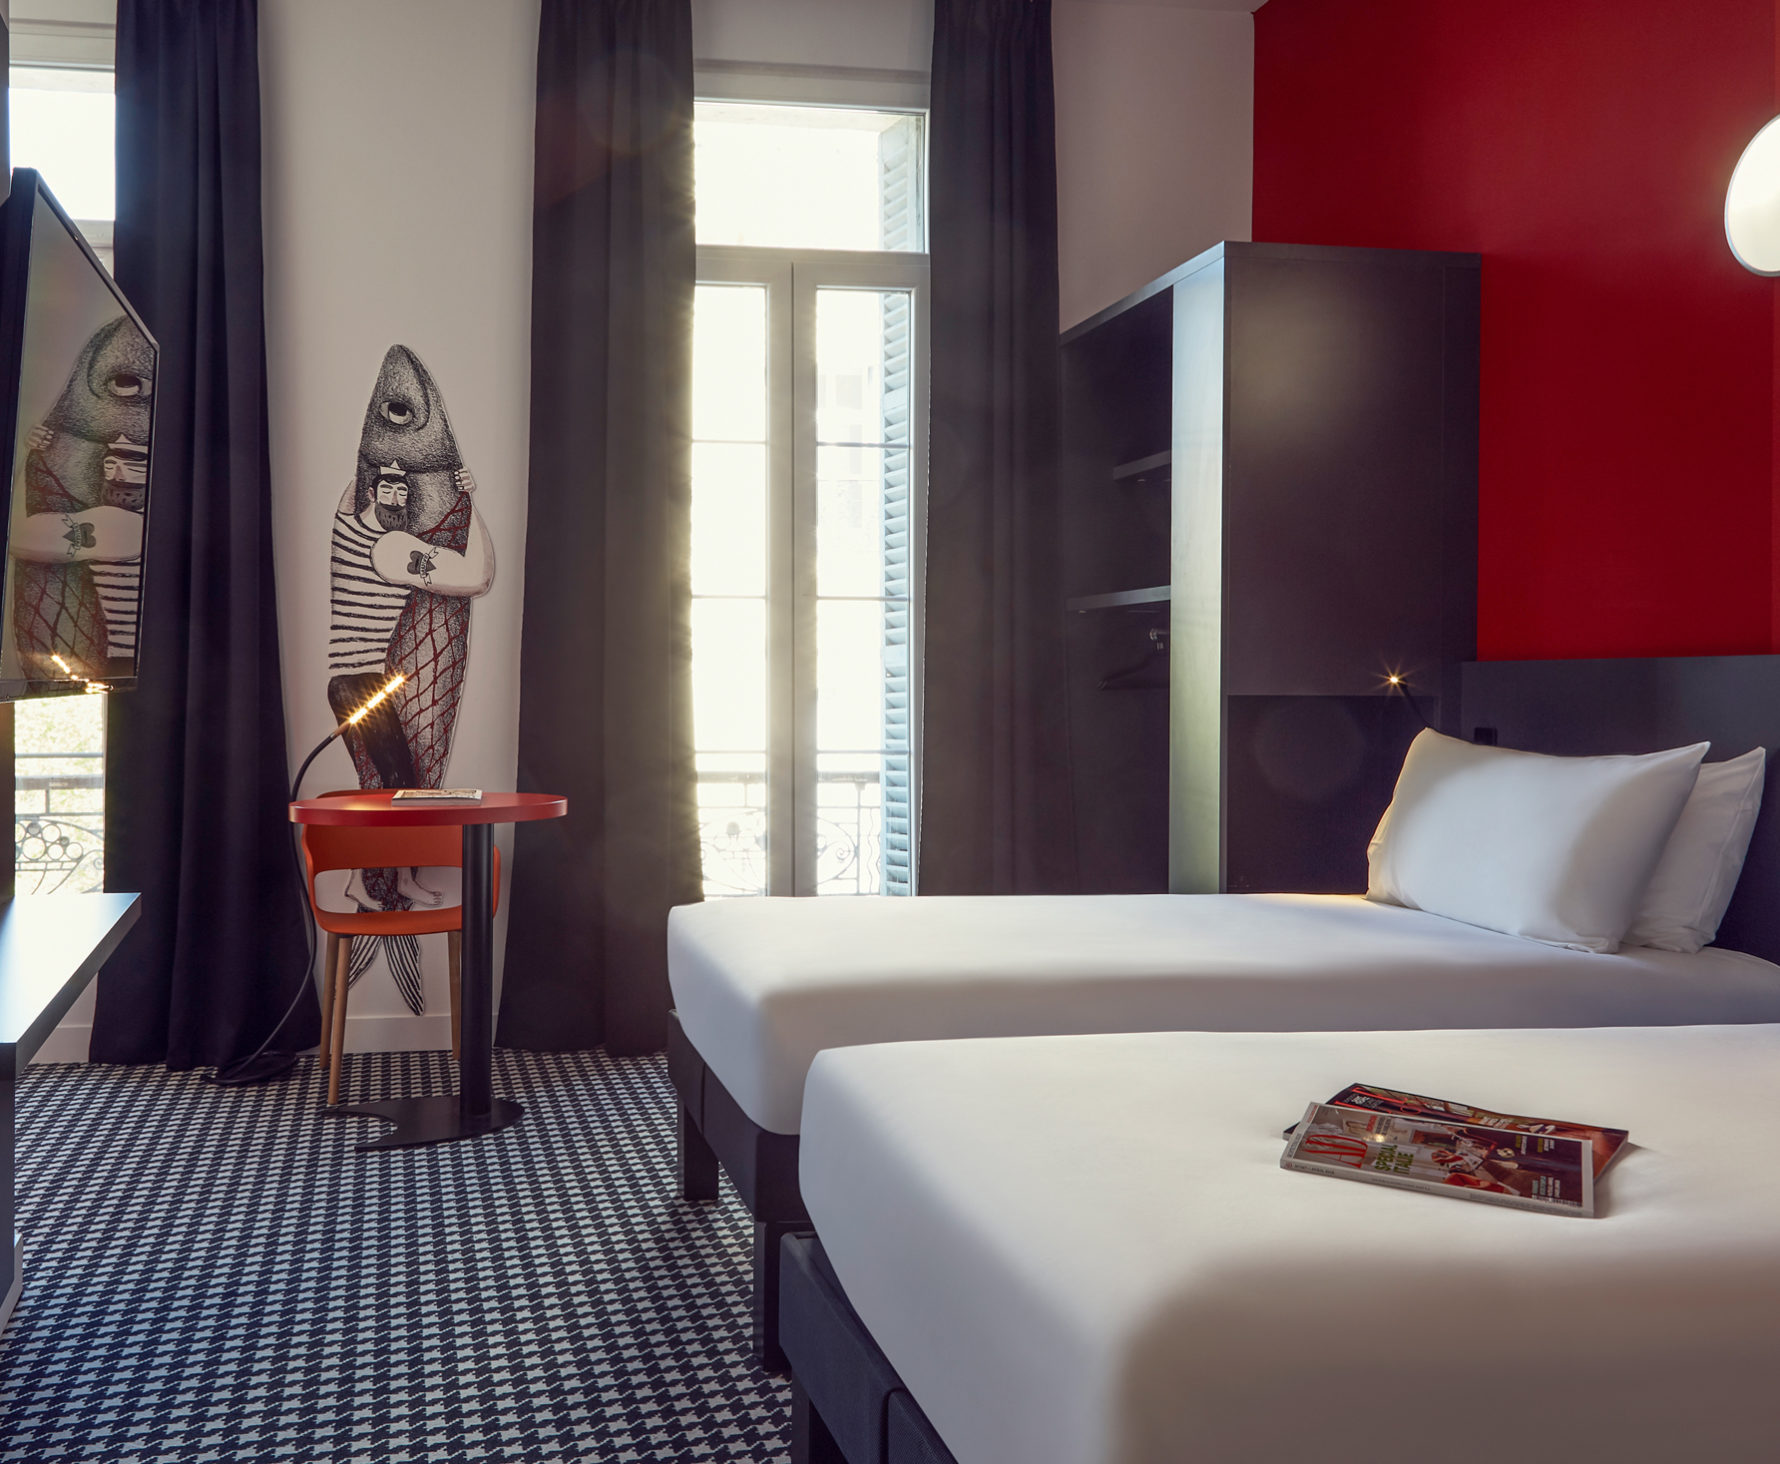 Aménagement et décoration des chambres twin duo de l'hôtel Ibis Styles de Marseille